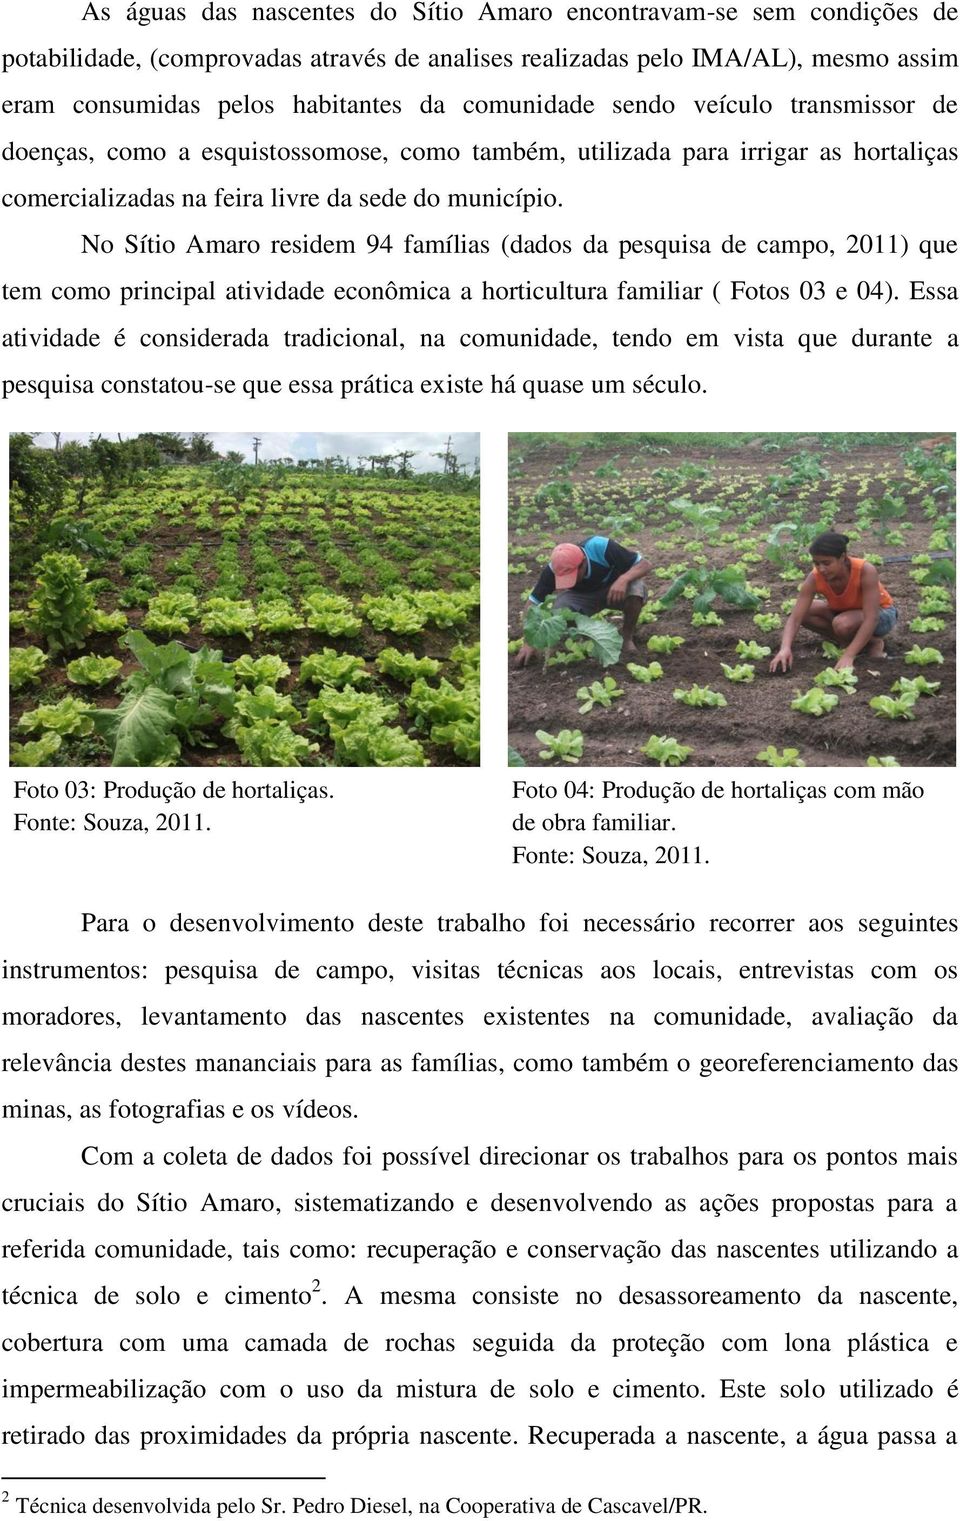 No Sítio Amaro residem 94 famílias (dados da pesquisa de campo, 2011) que tem como principal atividade econômica a horticultura familiar ( Fotos 03 e 04).